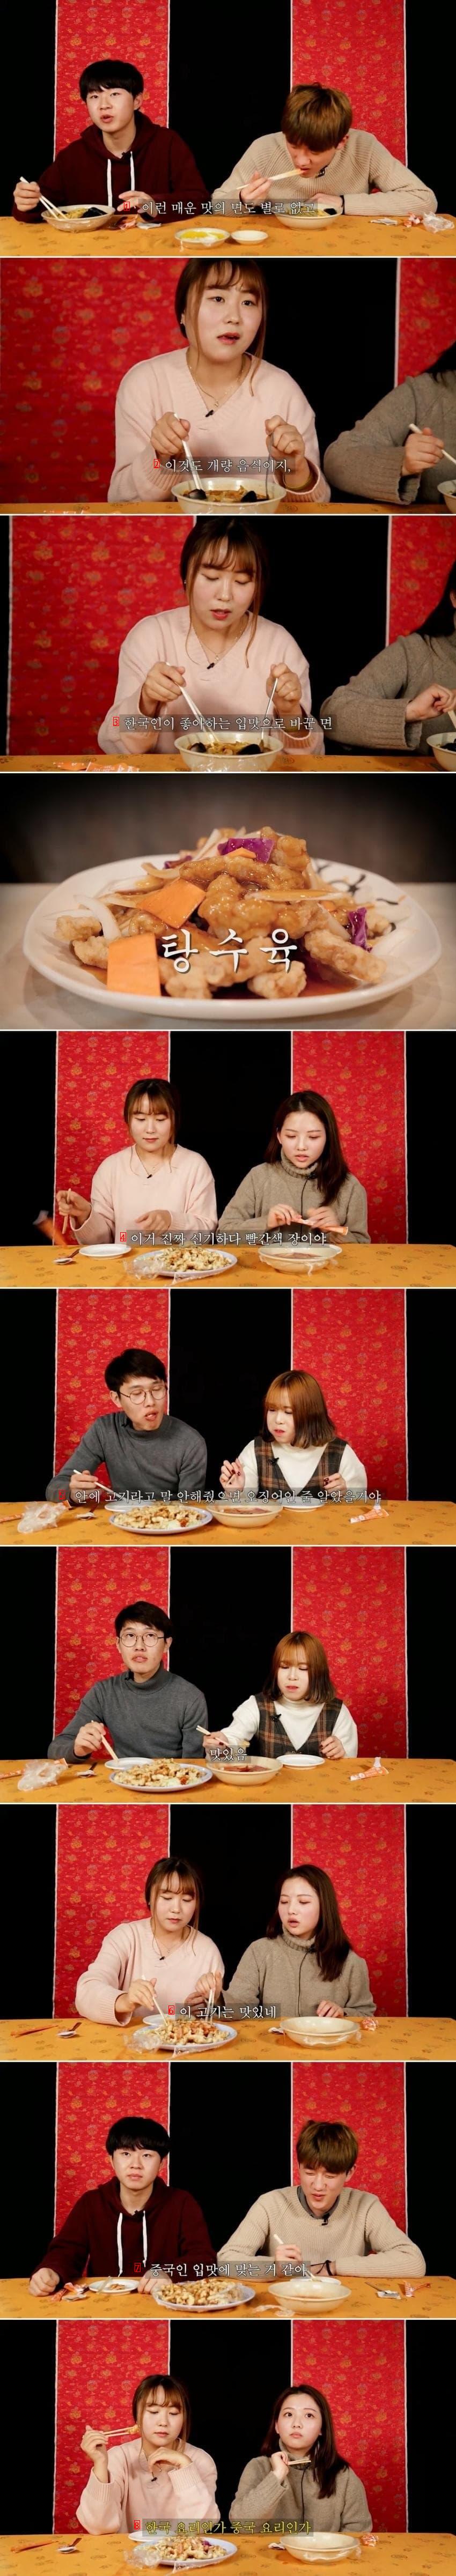 짜장면, 짬뽕, 탕수육을 먹어본 중국사람 반응.jpg